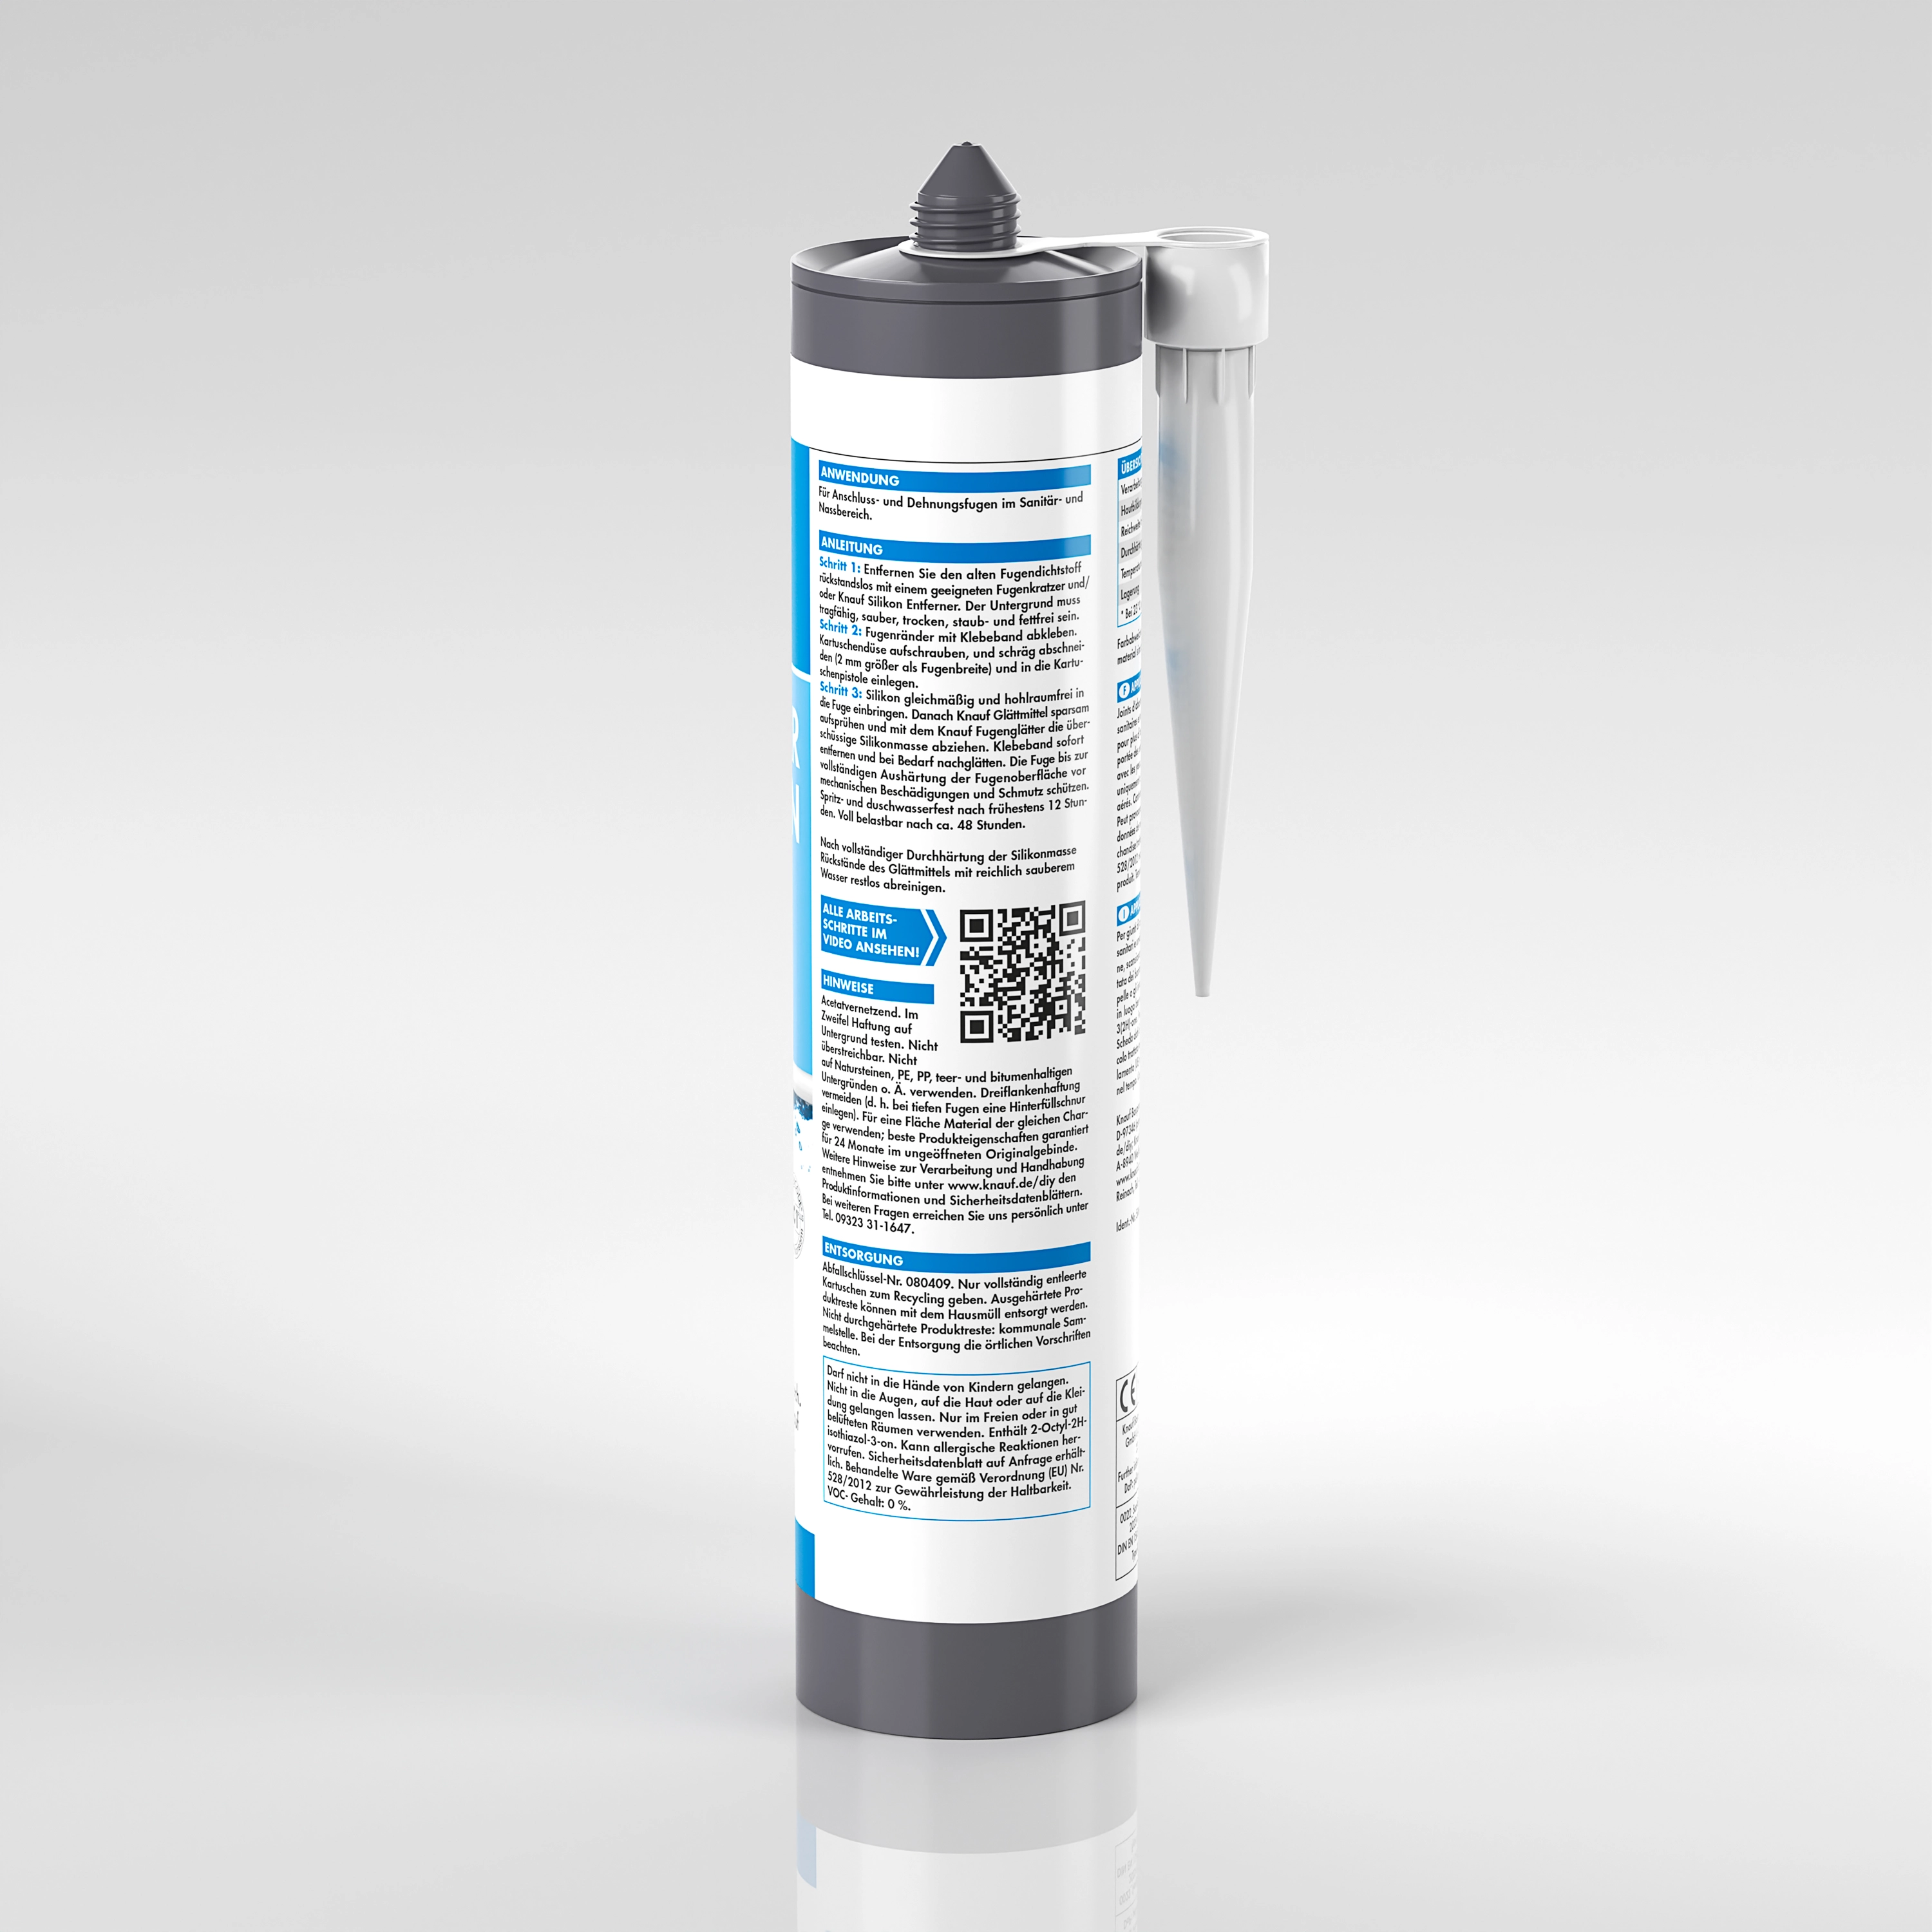 Knauf Sanitär-Silikon Transparent 300 ml kaufen bei OBI